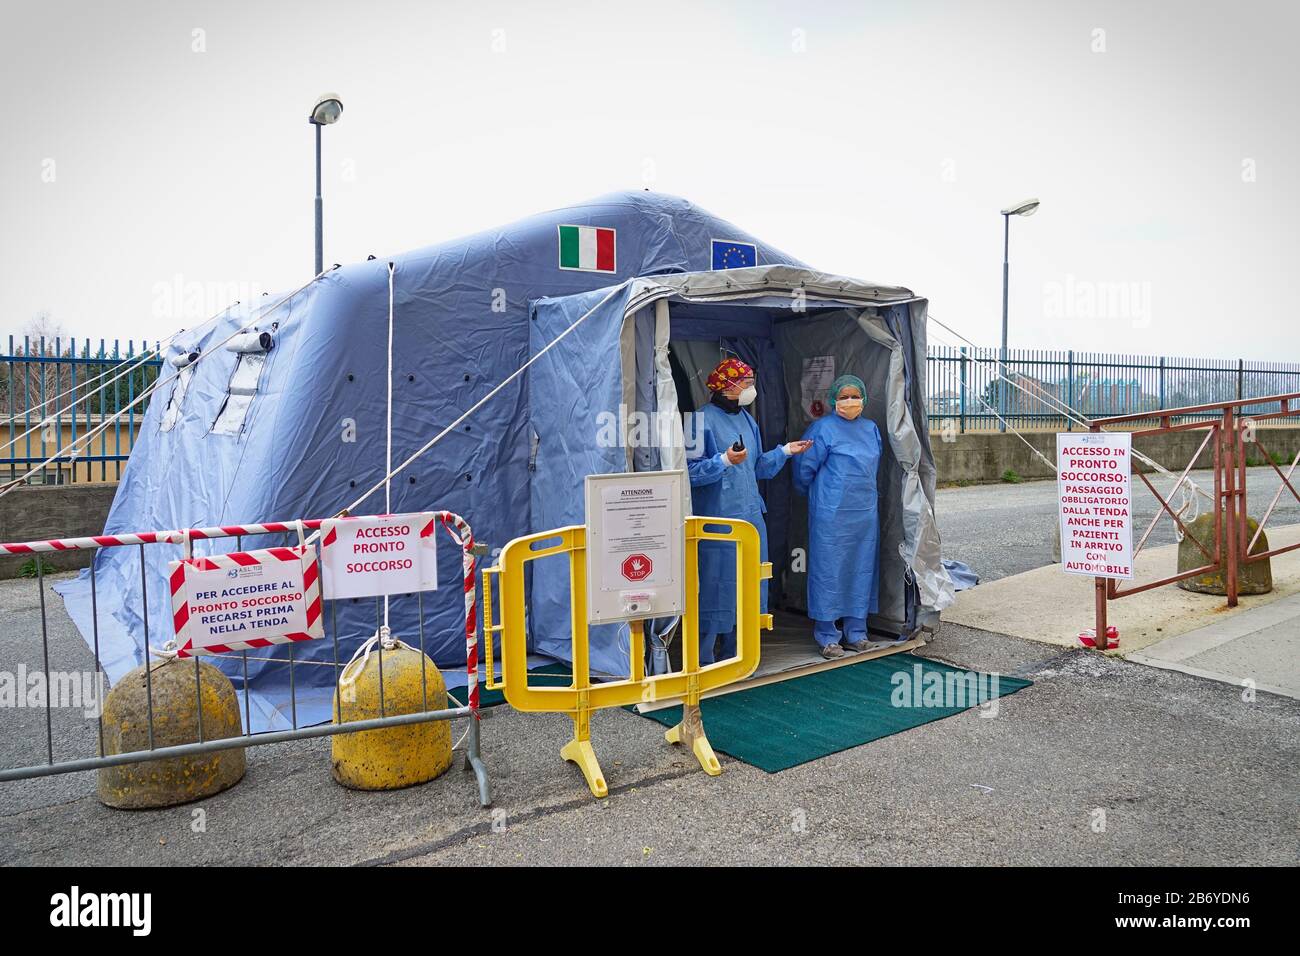 Das Triagenzelt außerhalb des Krankenhauses für den Notfall, der durch die Ausbreitung des Coronavirus verursacht wurde. Mailand, Italien - märz 2020 Stockfoto